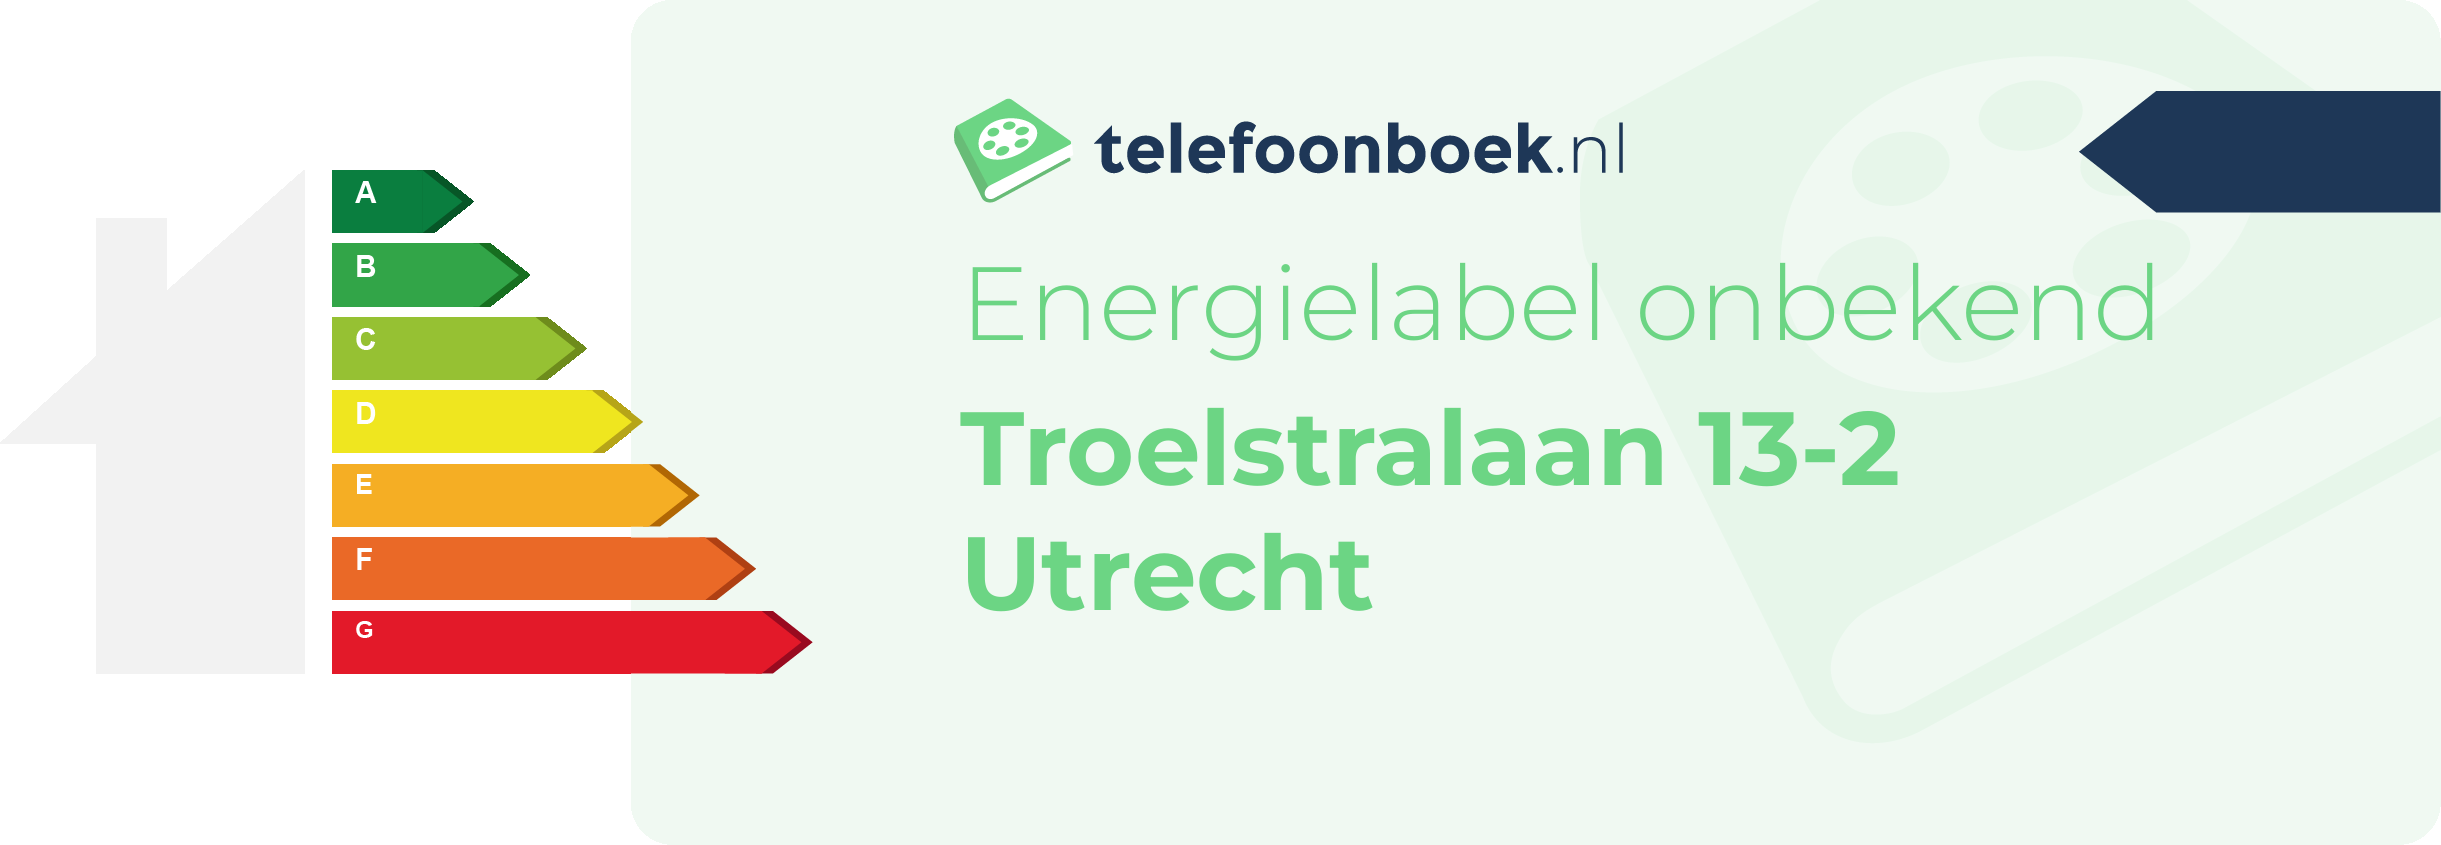 Energielabel Troelstralaan 13-2 Utrecht